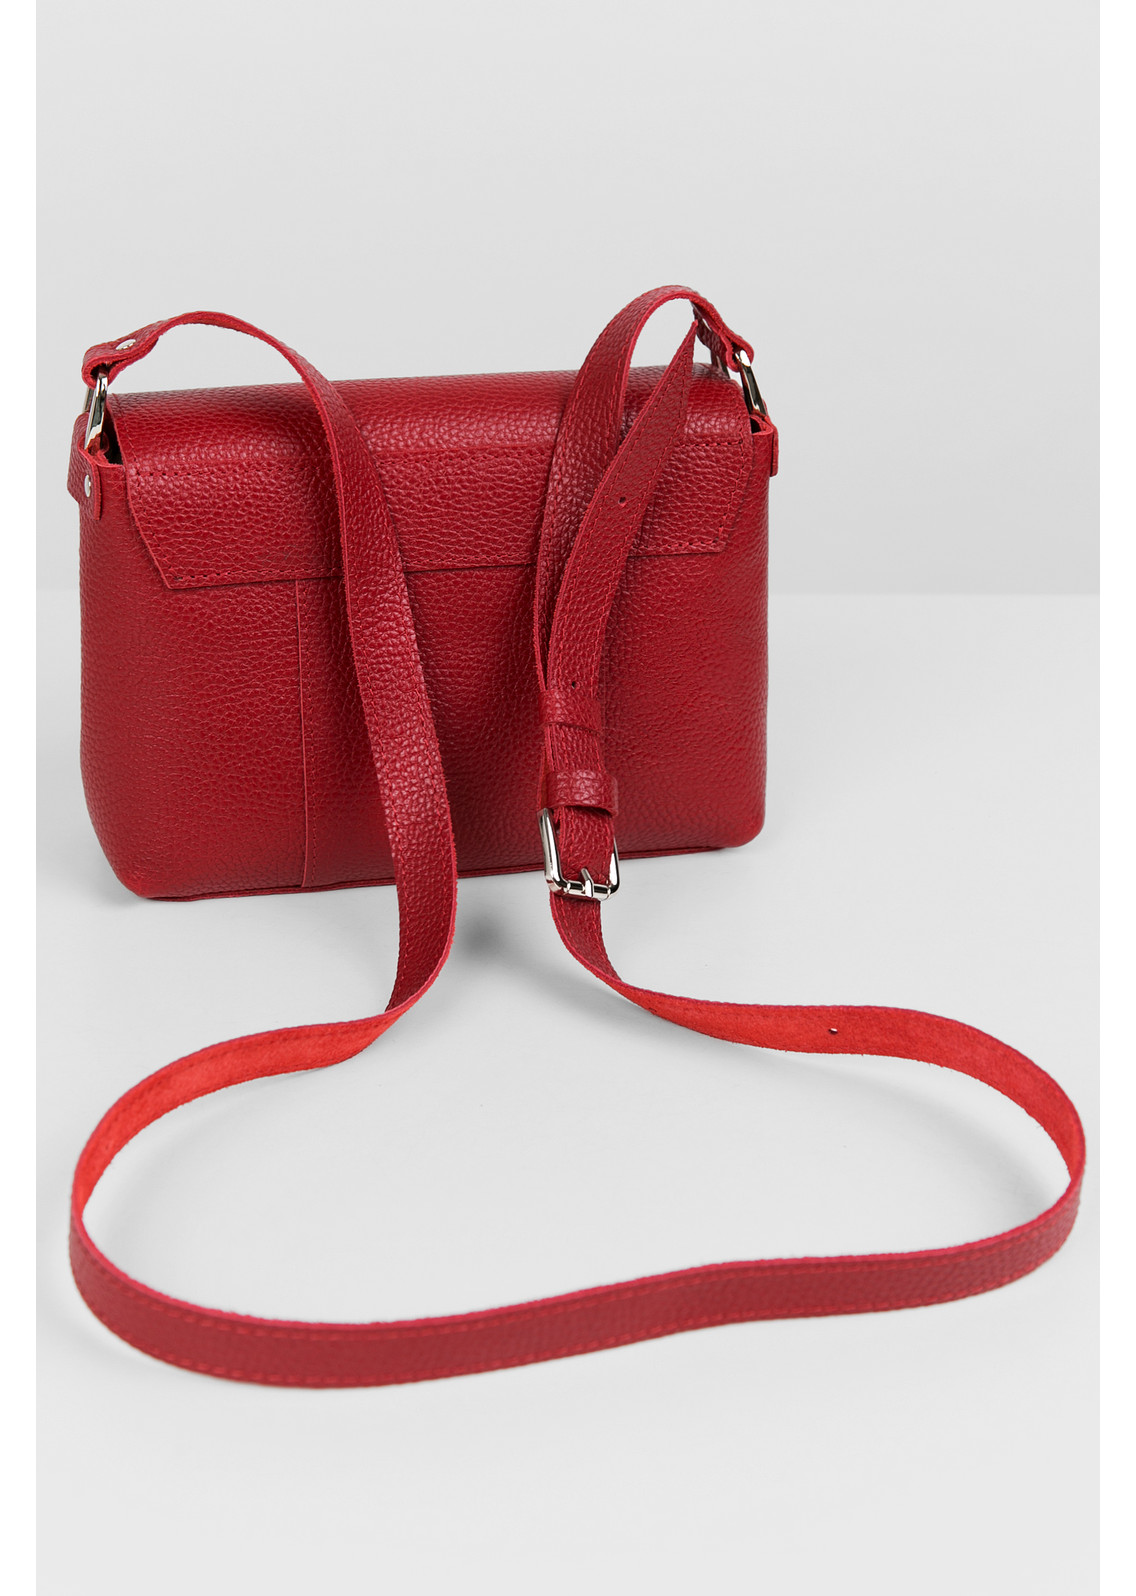 Женская сумка через плечо из натуральной кожи красная A011 ruby grain